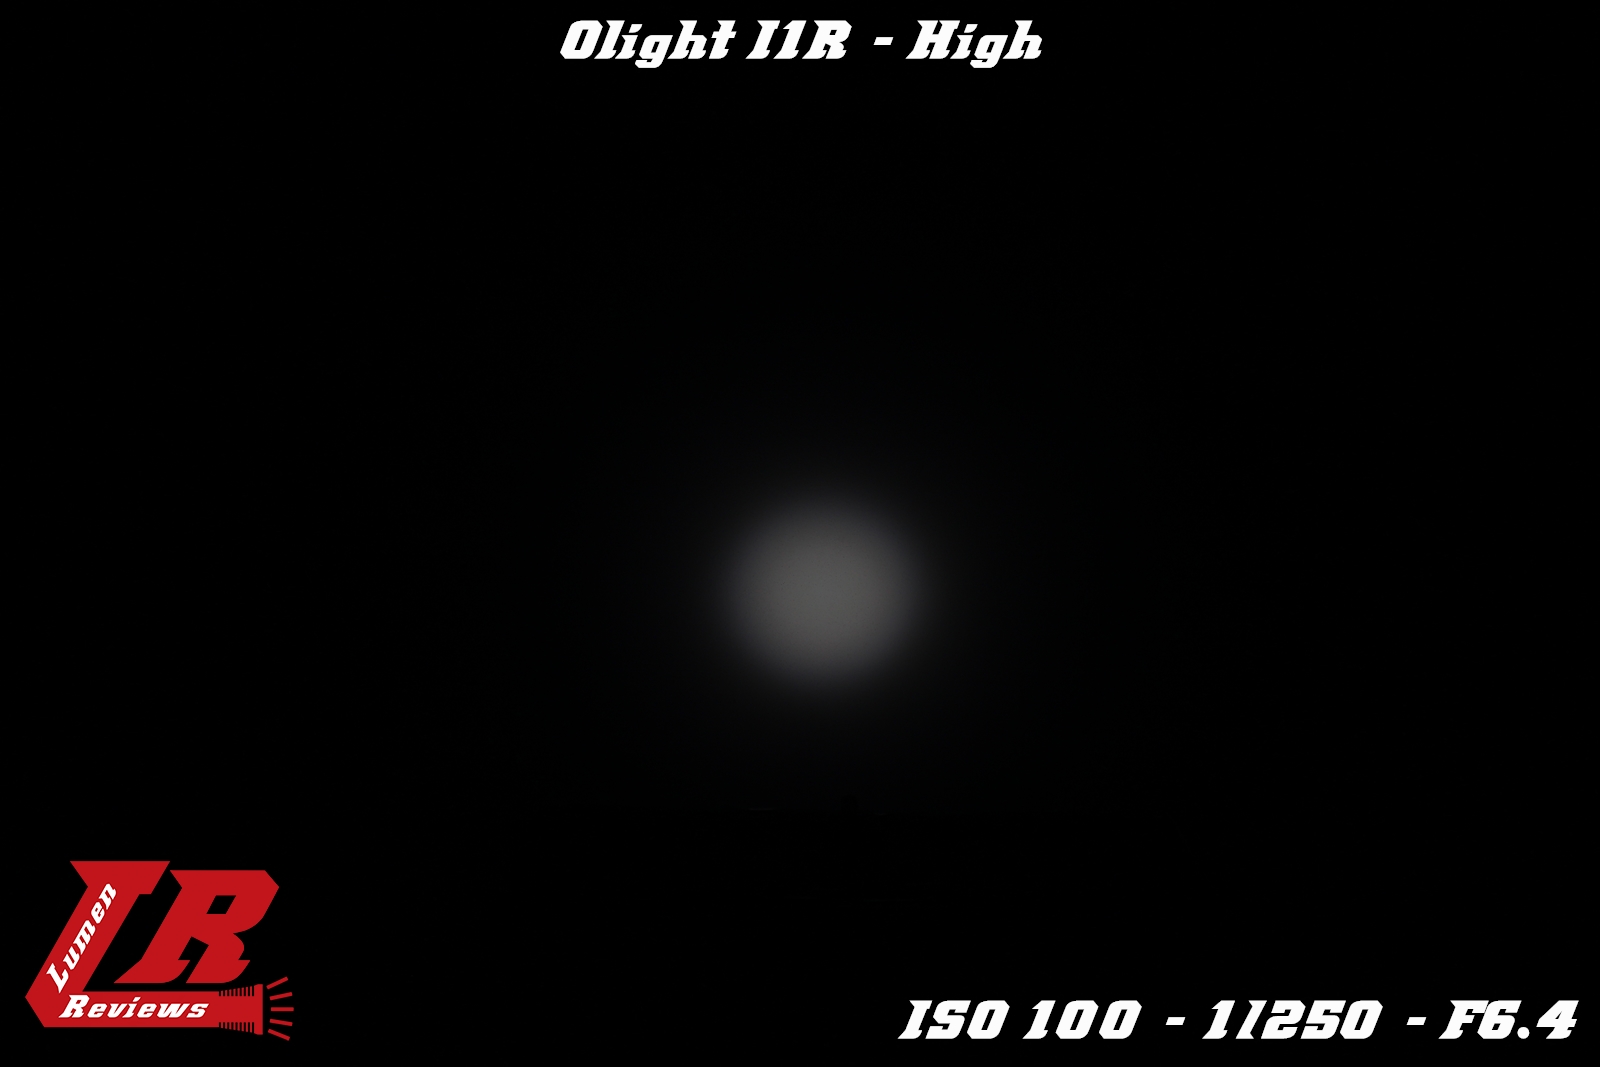 Olight_I1R_19.jpg